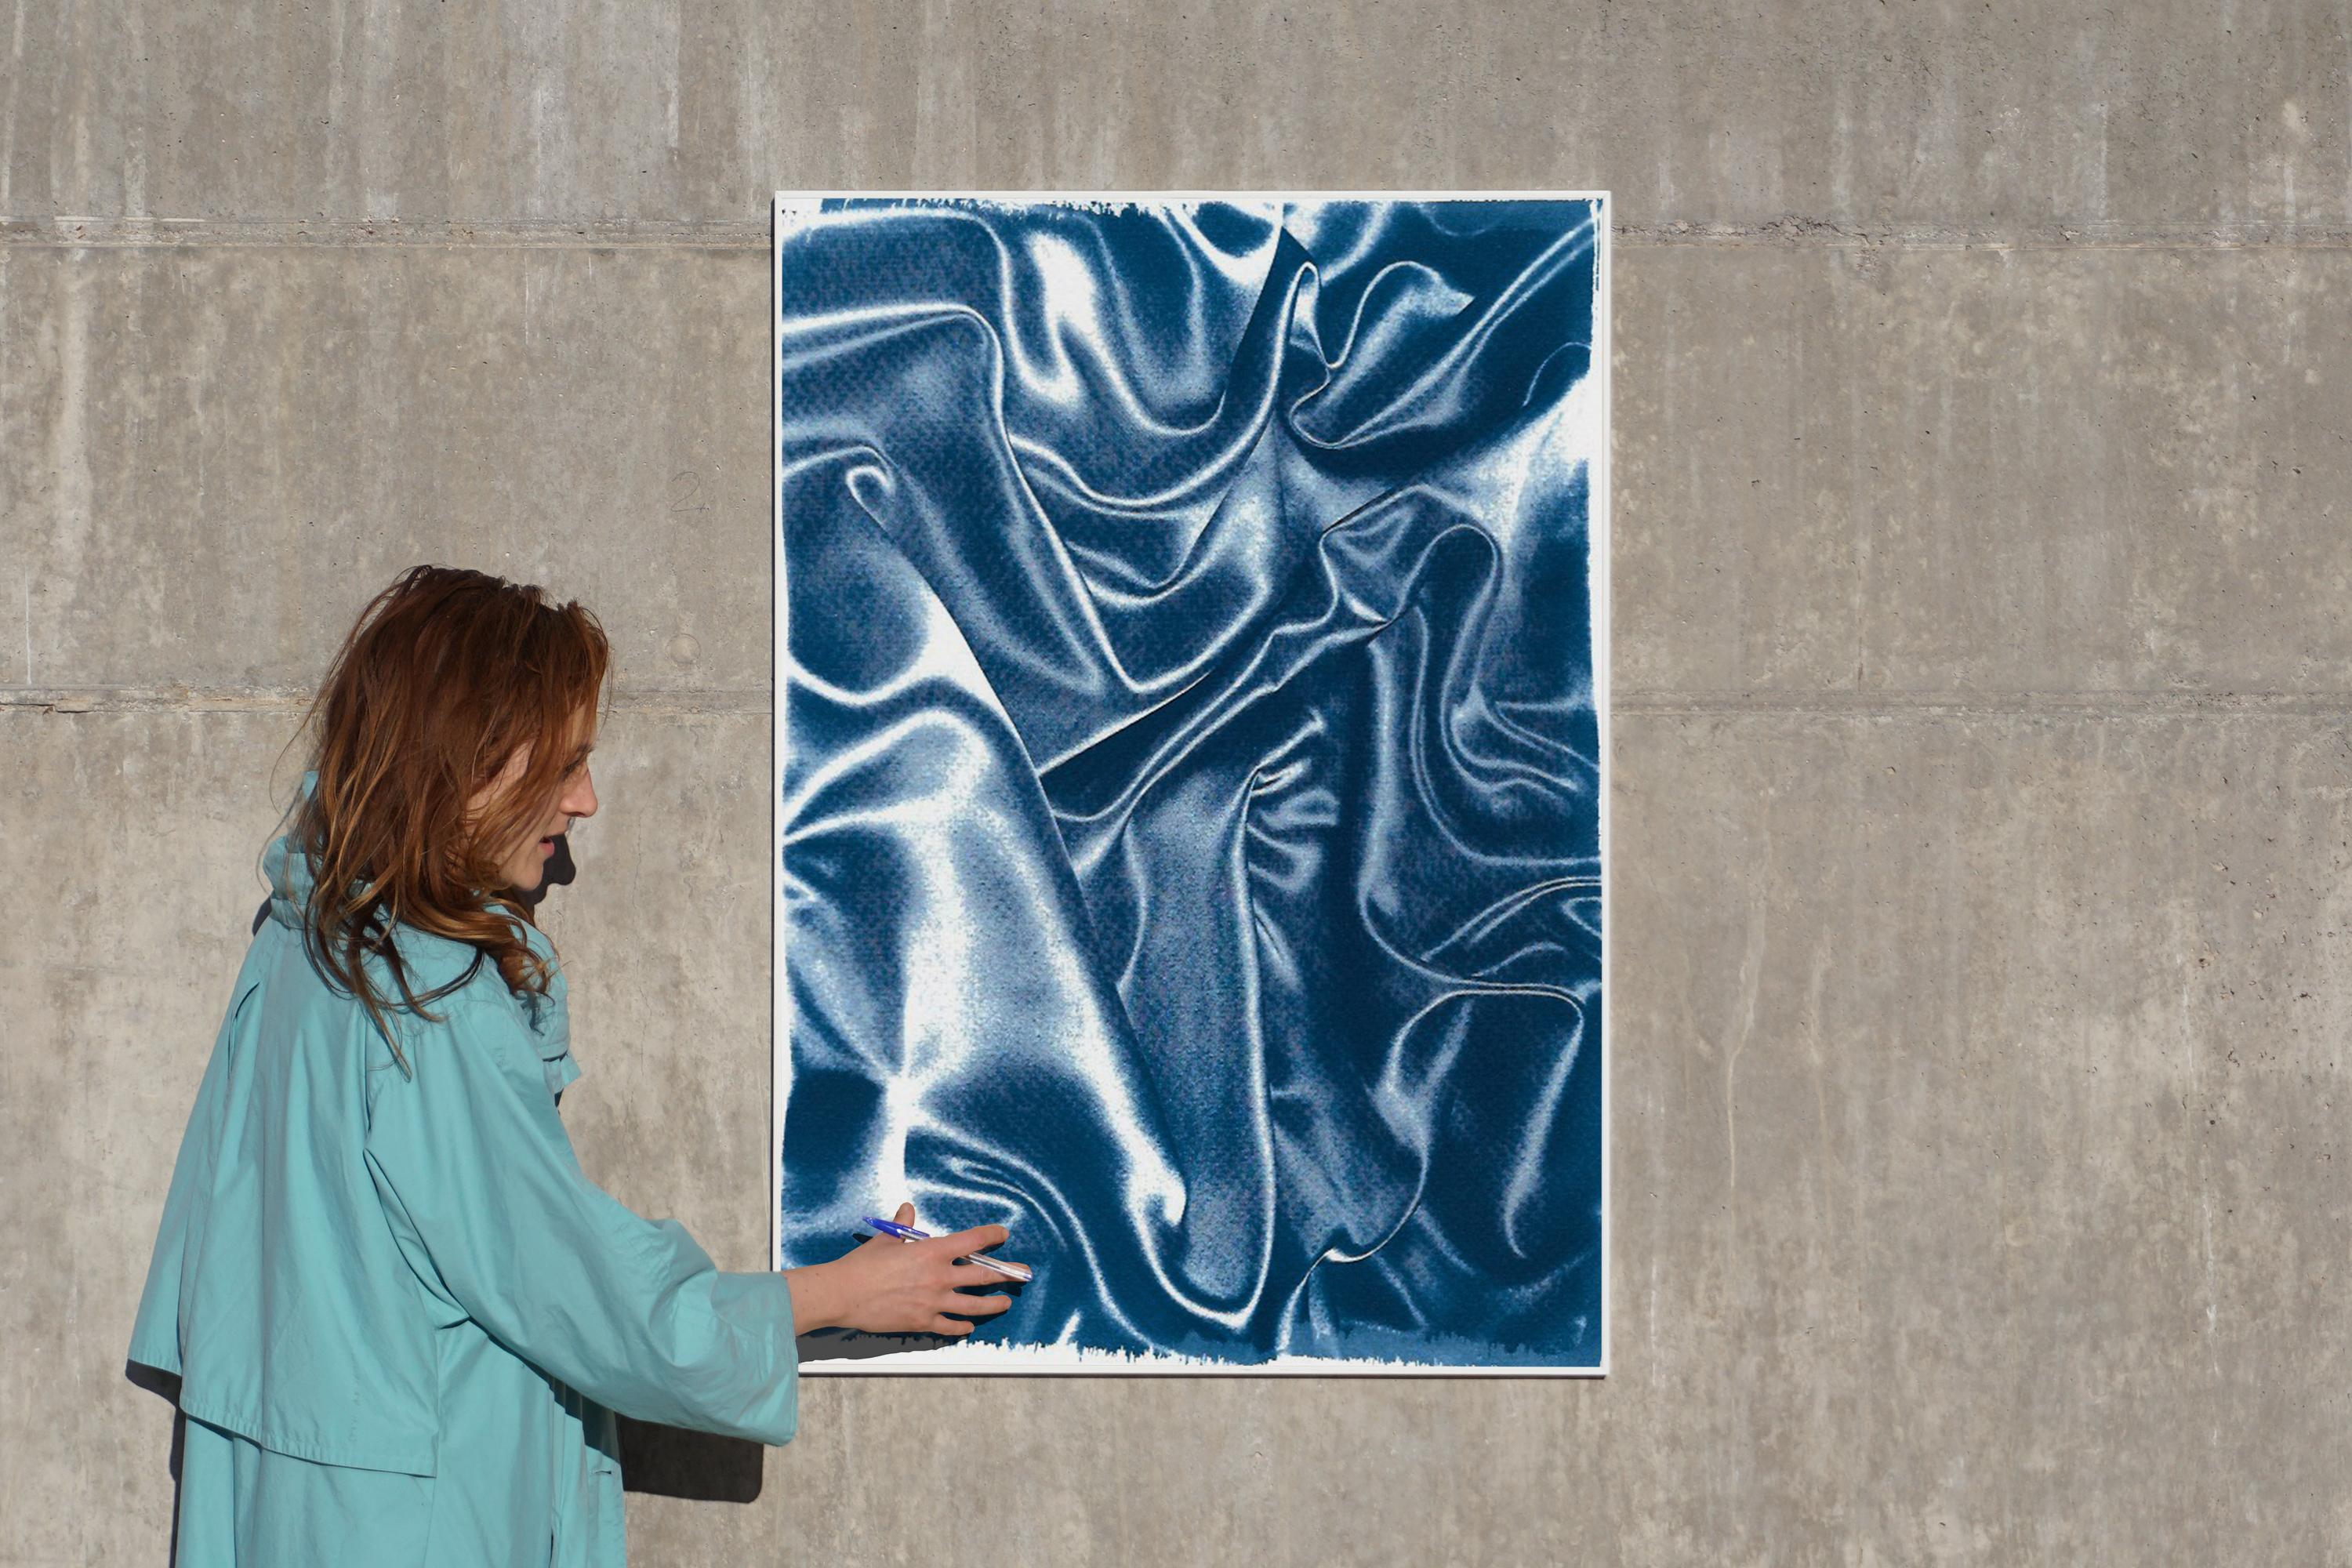 Mouvement classique de la soie bleue, gestes abstraits en tissu, cyanotype contemporain  - Painting de Kind of Cyan